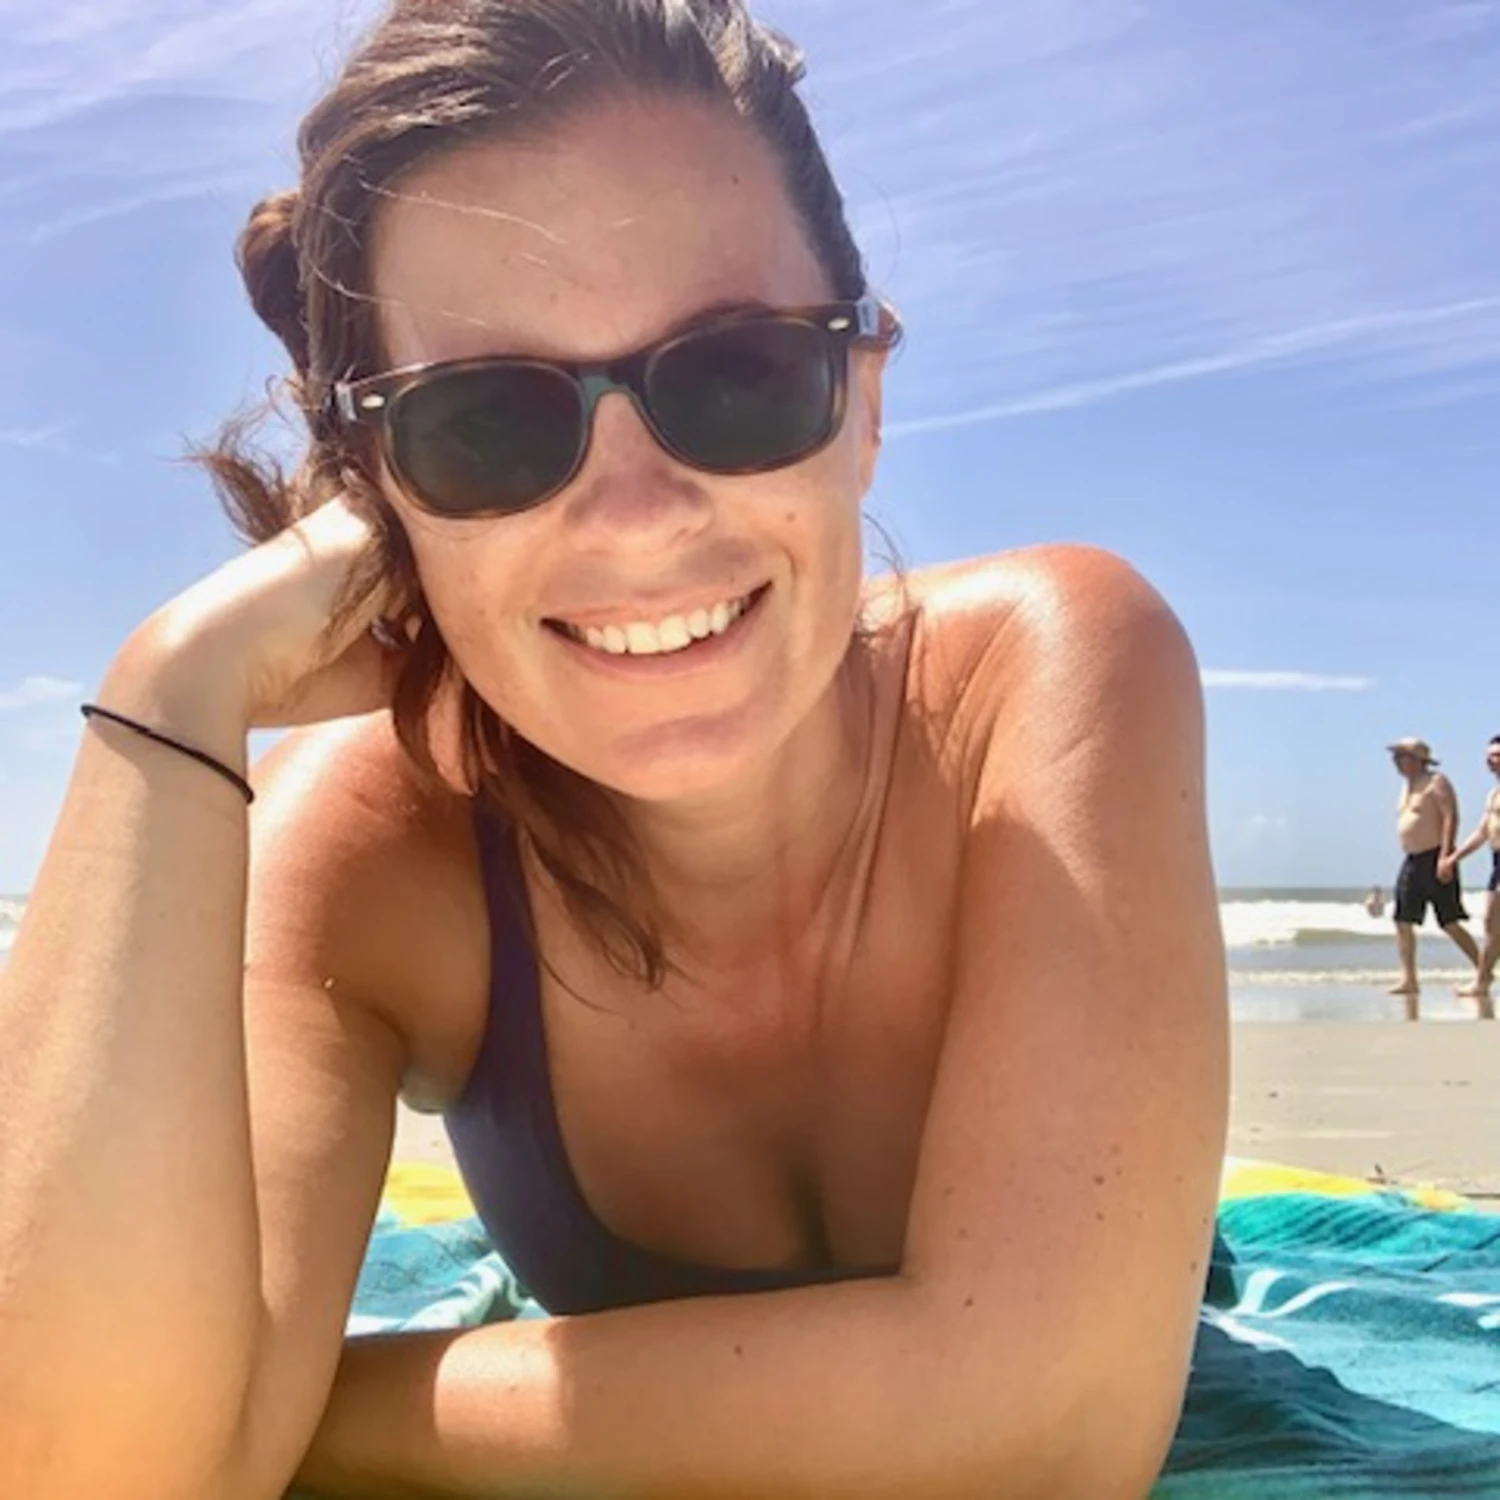 Stephanie on the beach